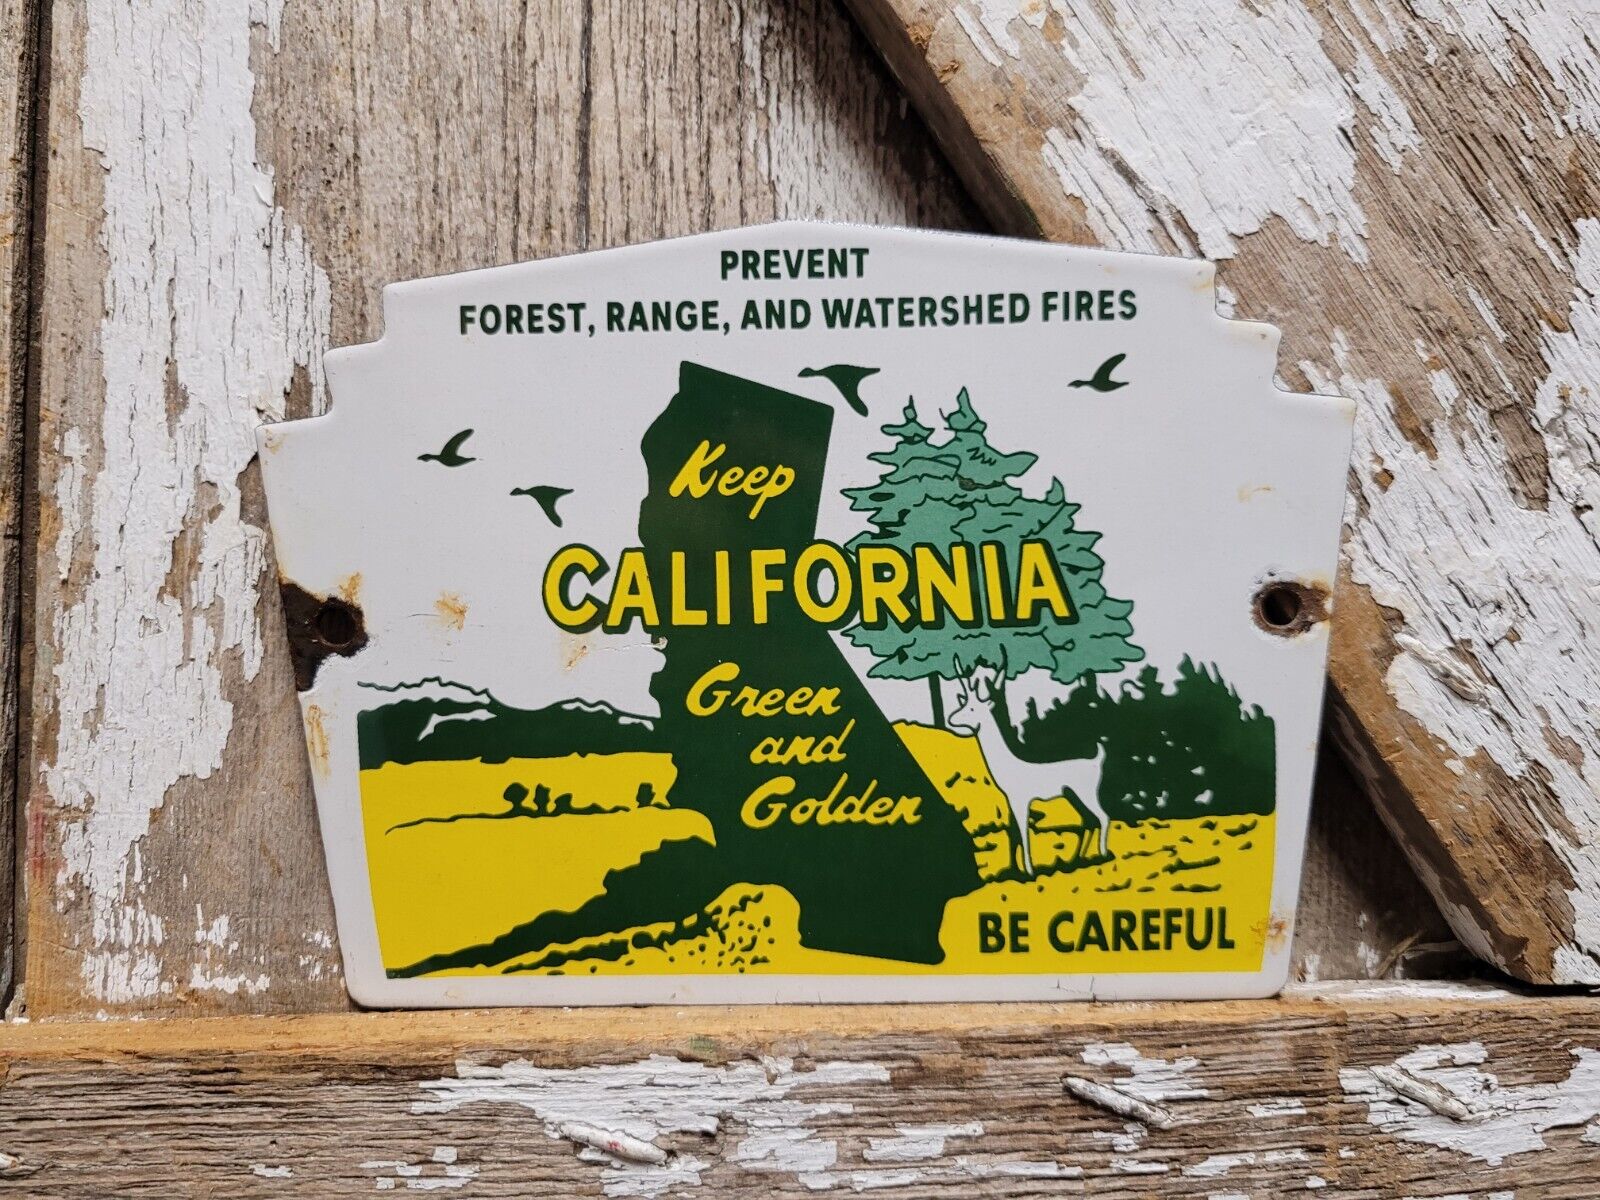 VINTAGE CALIFORNIA PORCELAIN SIGN FOREST SERVICE PREVENT CAMP RANGE PARK FIRES 